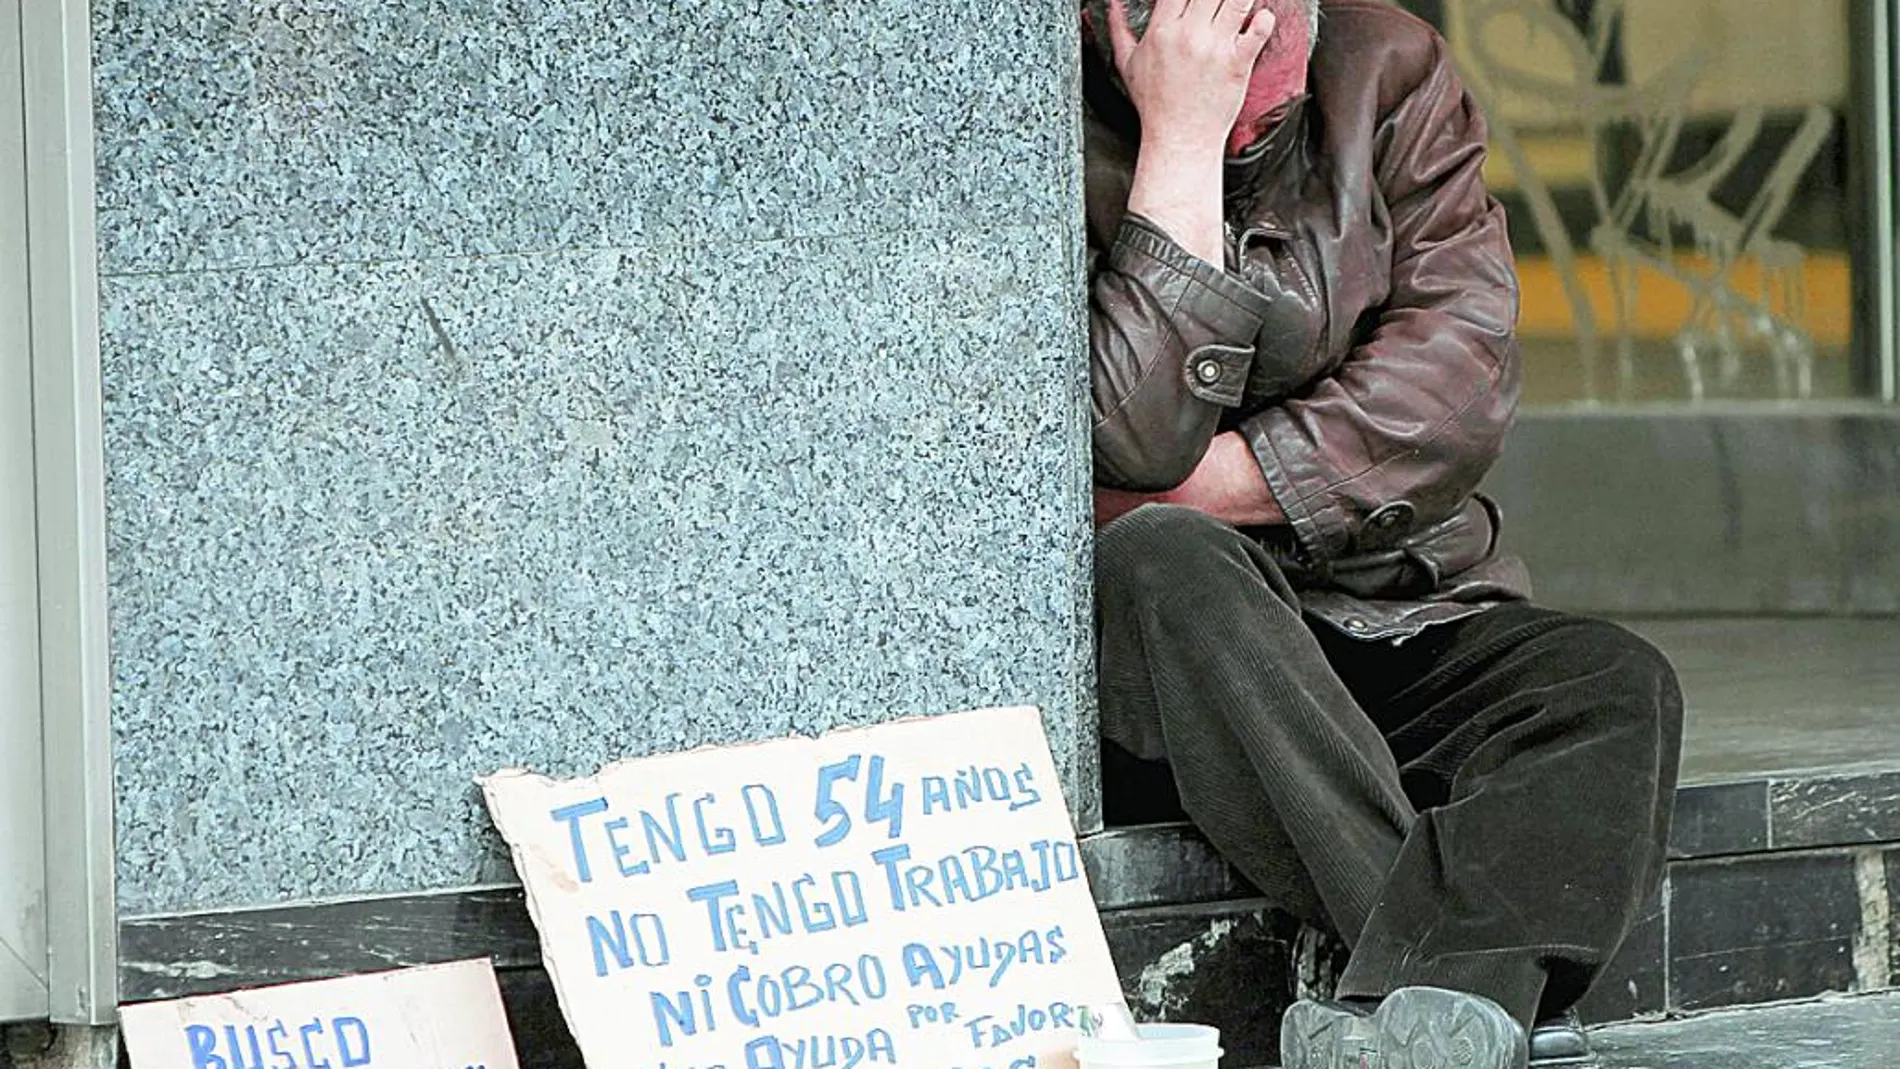 Los centros para gente sin hogar atendieron a 14.000 personas cada día en 2014